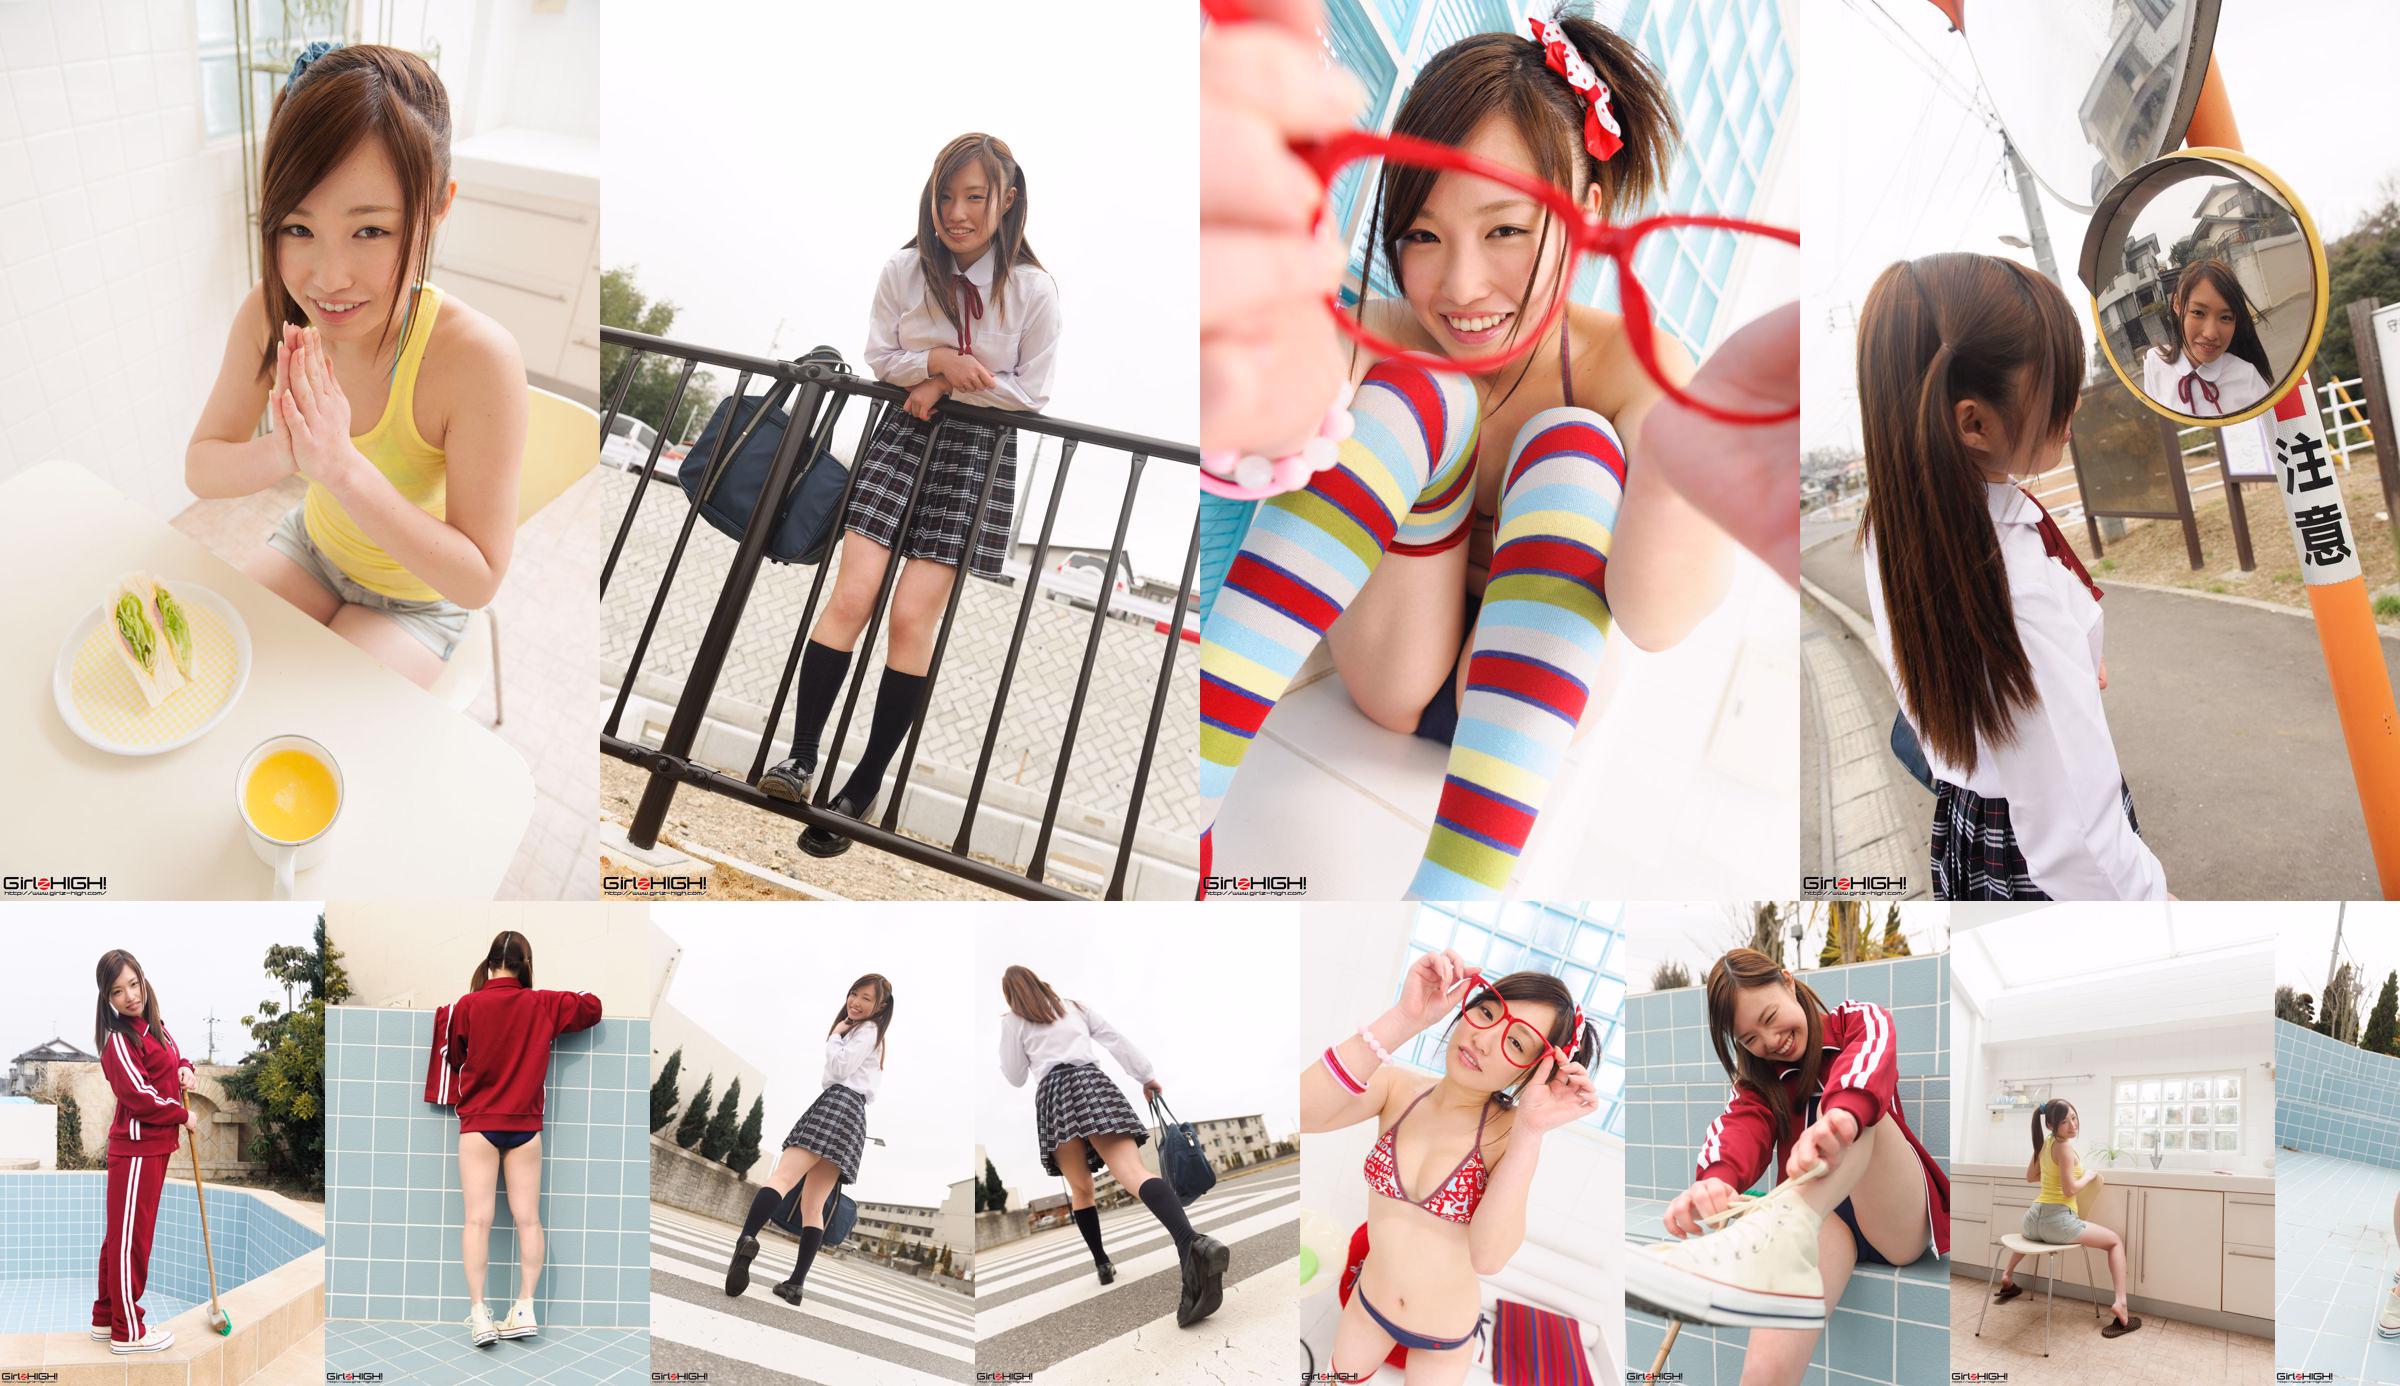 [Girlz-High] Yuno Natsuki Yuno Natsuki / Phòng trưng bày ống đồng của Yuno Natsuki --g023 Photoset 02 No.f2bcfa Trang 1